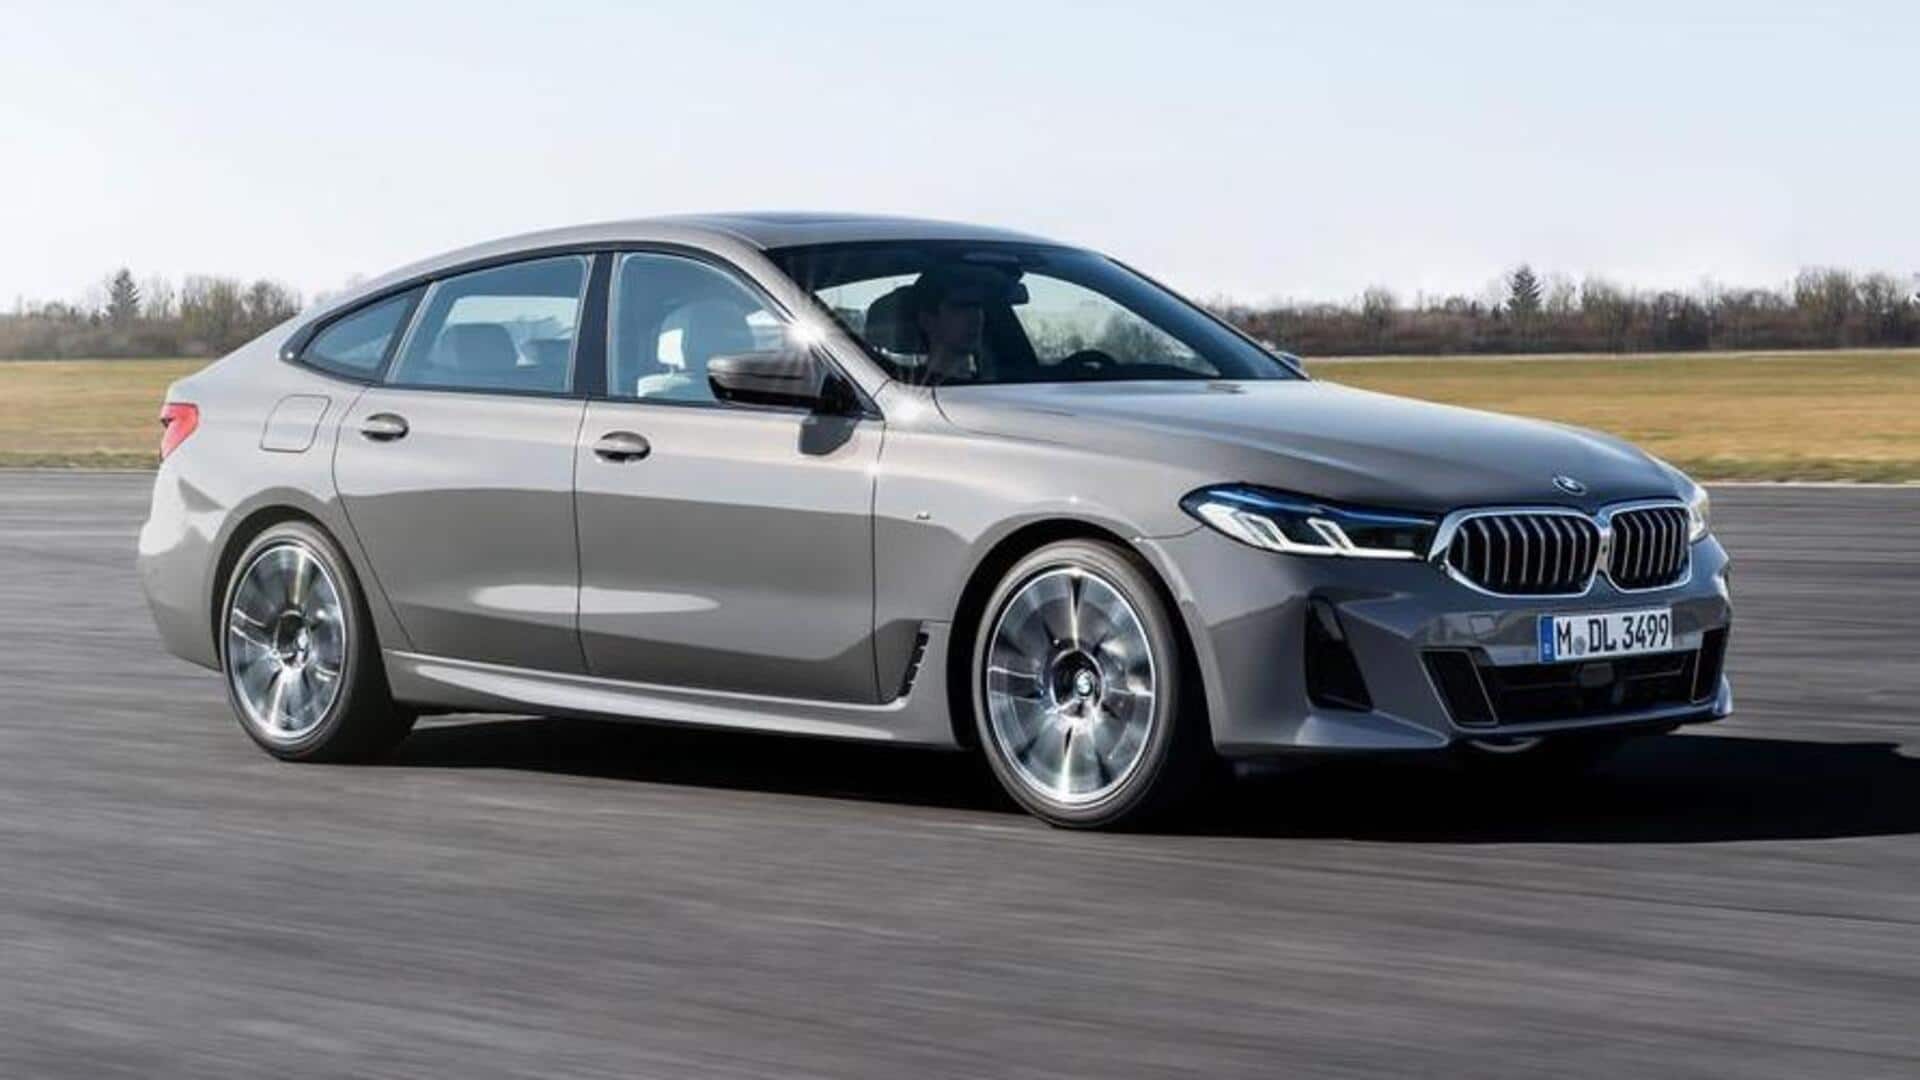 BMW 6-सीरीज GT कार की लाइनअप में हुआ बदलाव, 3 वेरिएंट का प्रोडक्शन किया बंद 